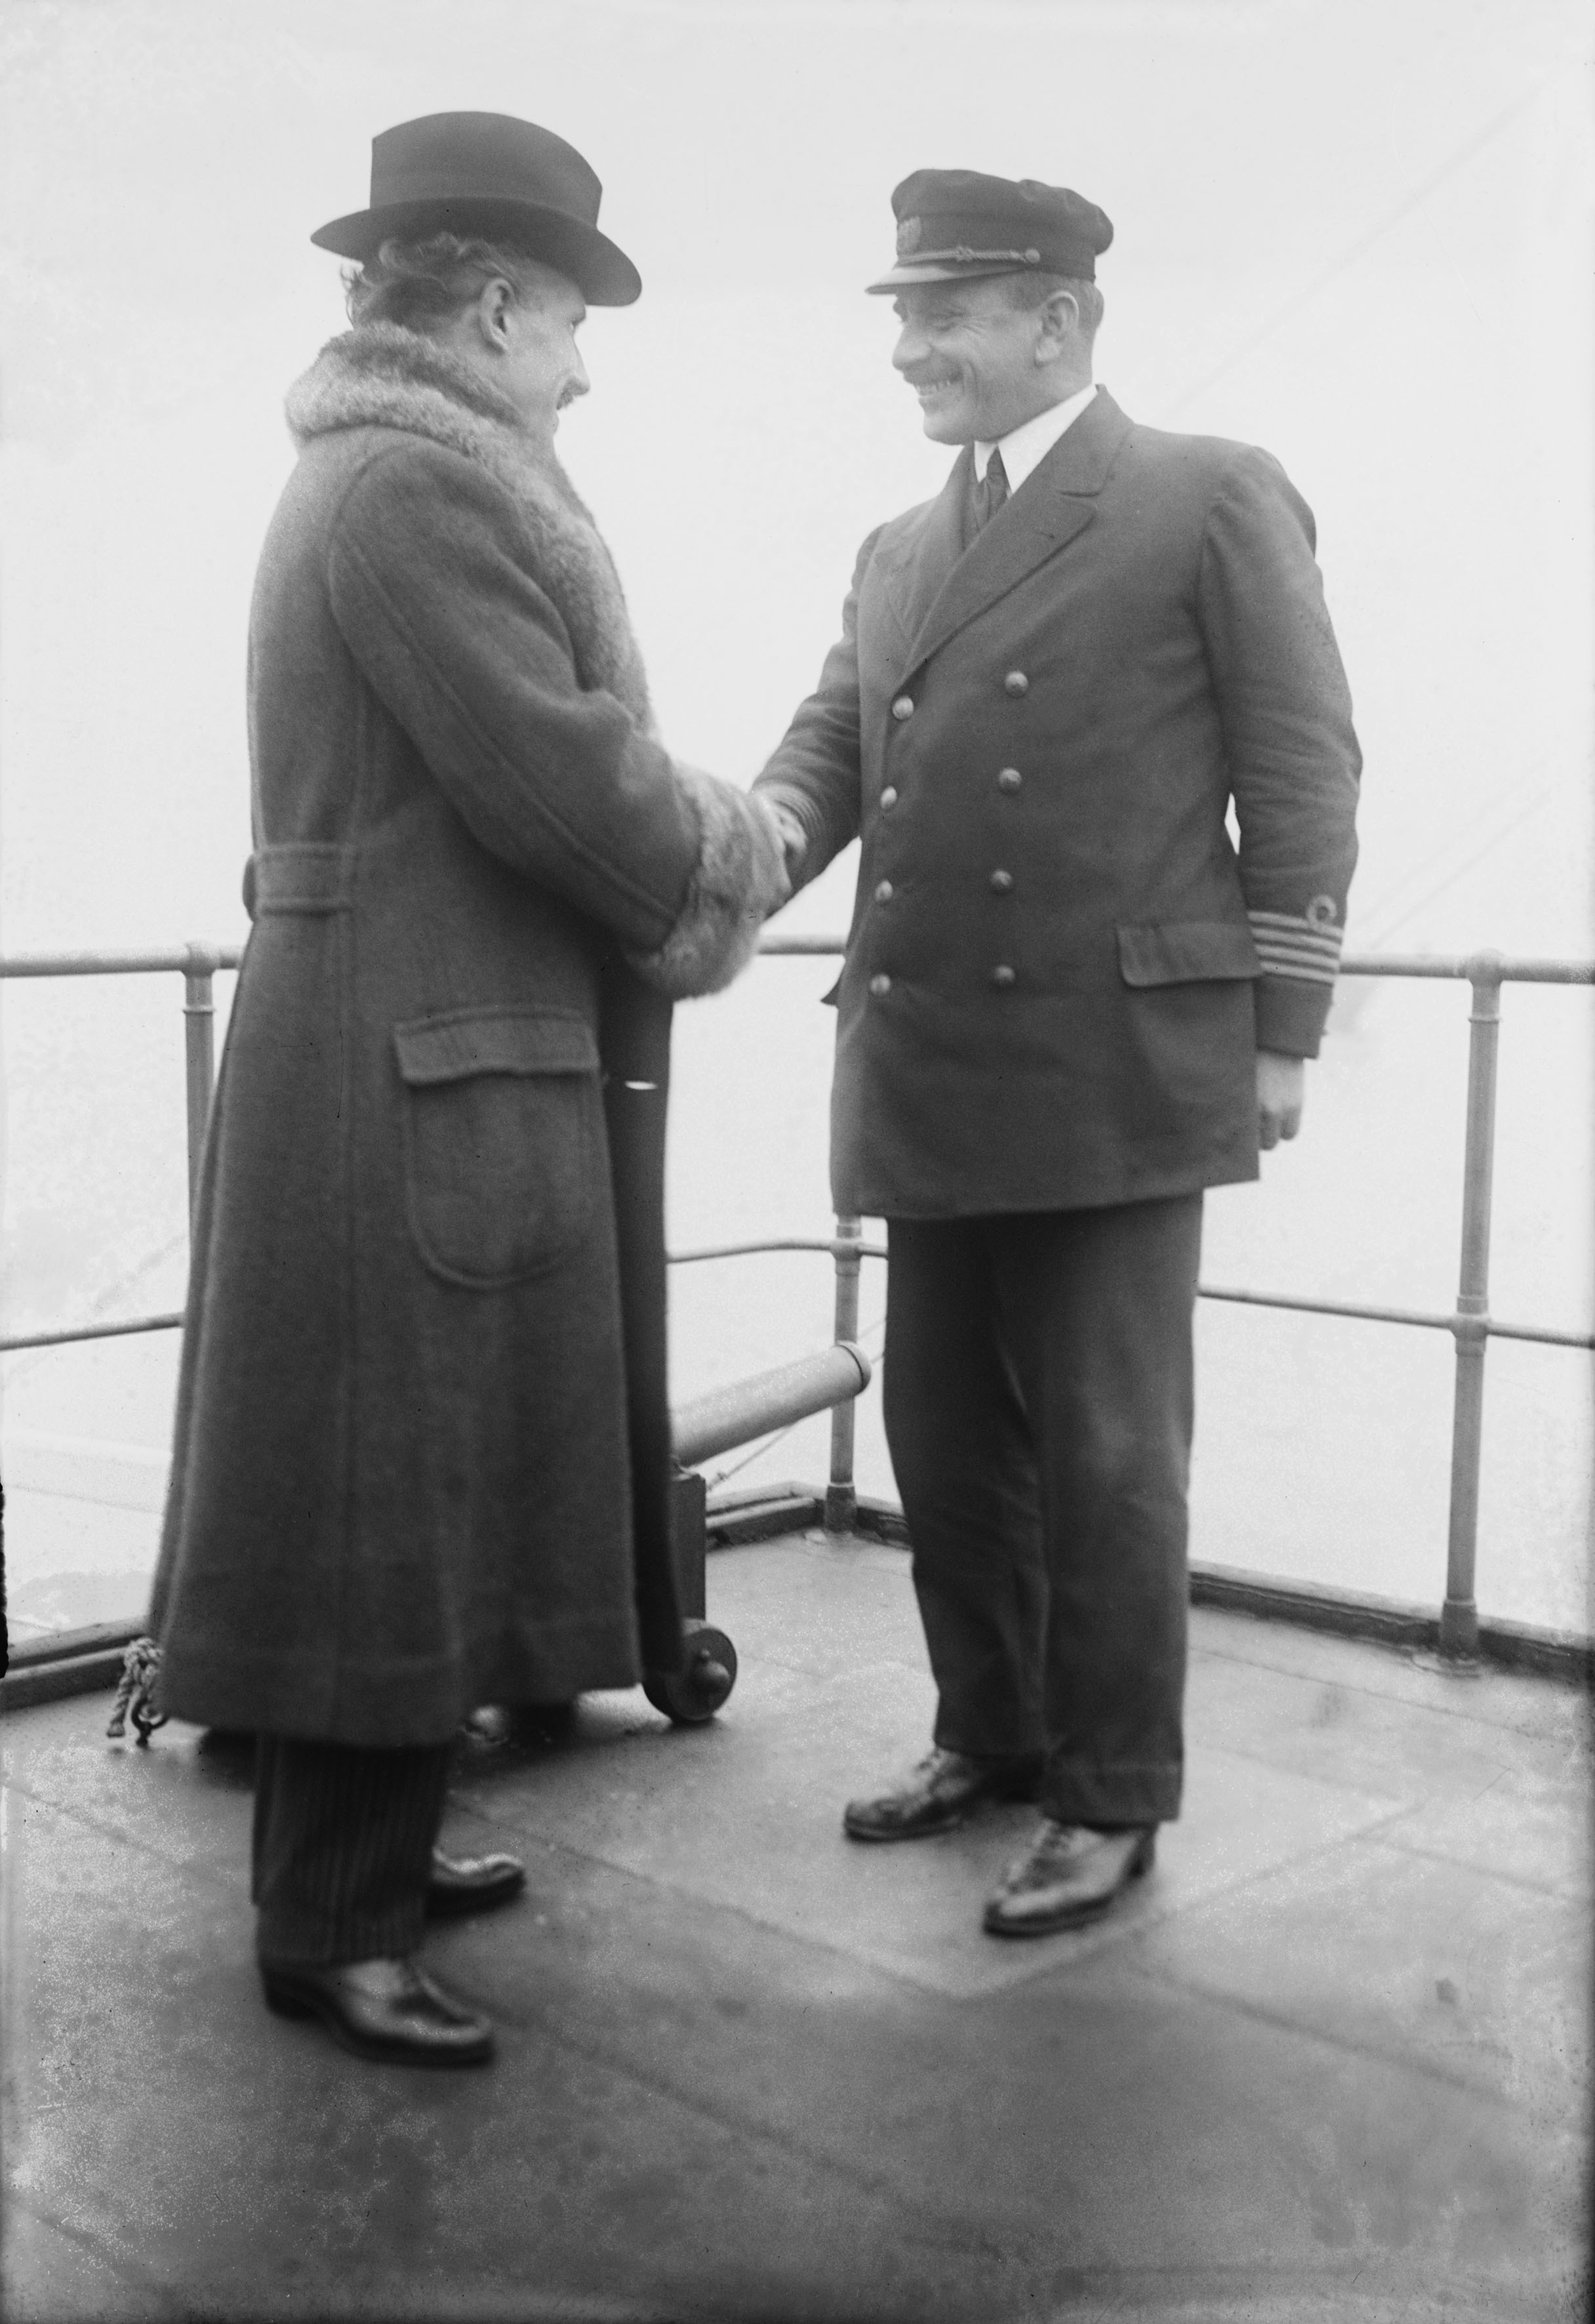 1922, 7 gennaio. Arturo Toscanini a bordo di una nave, durante una tournée, in compagnia del comandante.